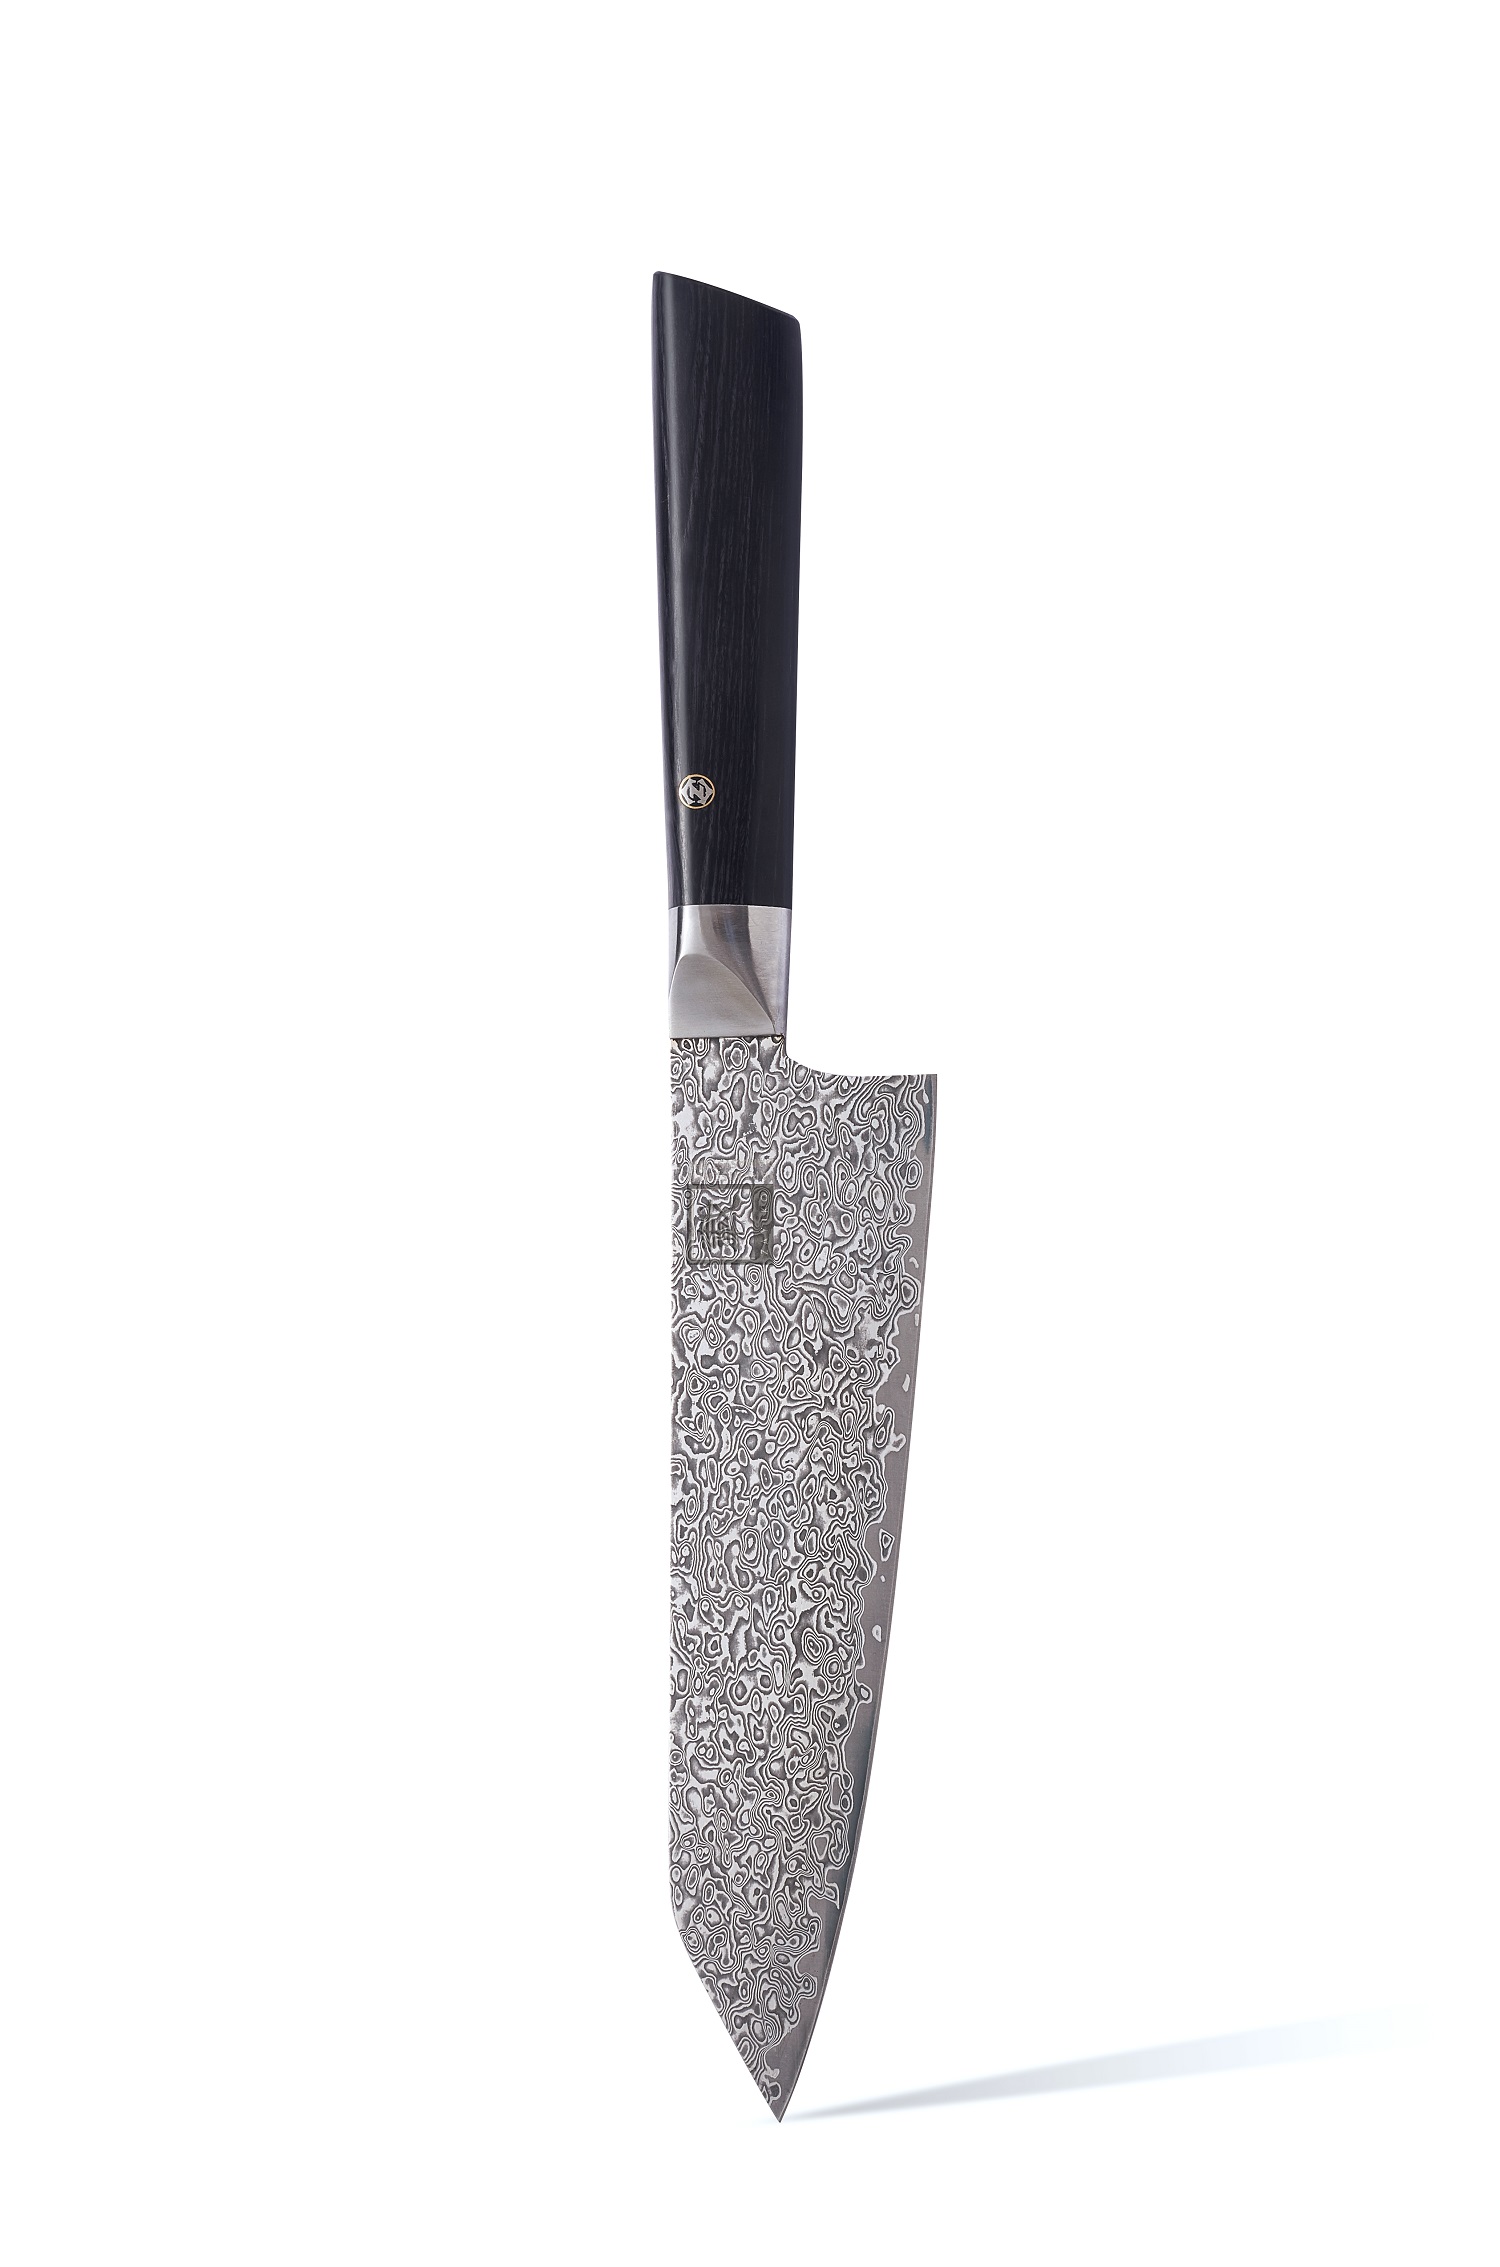 Zayiko Damastmesser Black Edition Neues Chefmesser 19 cm - 1DM-JAP-BLA